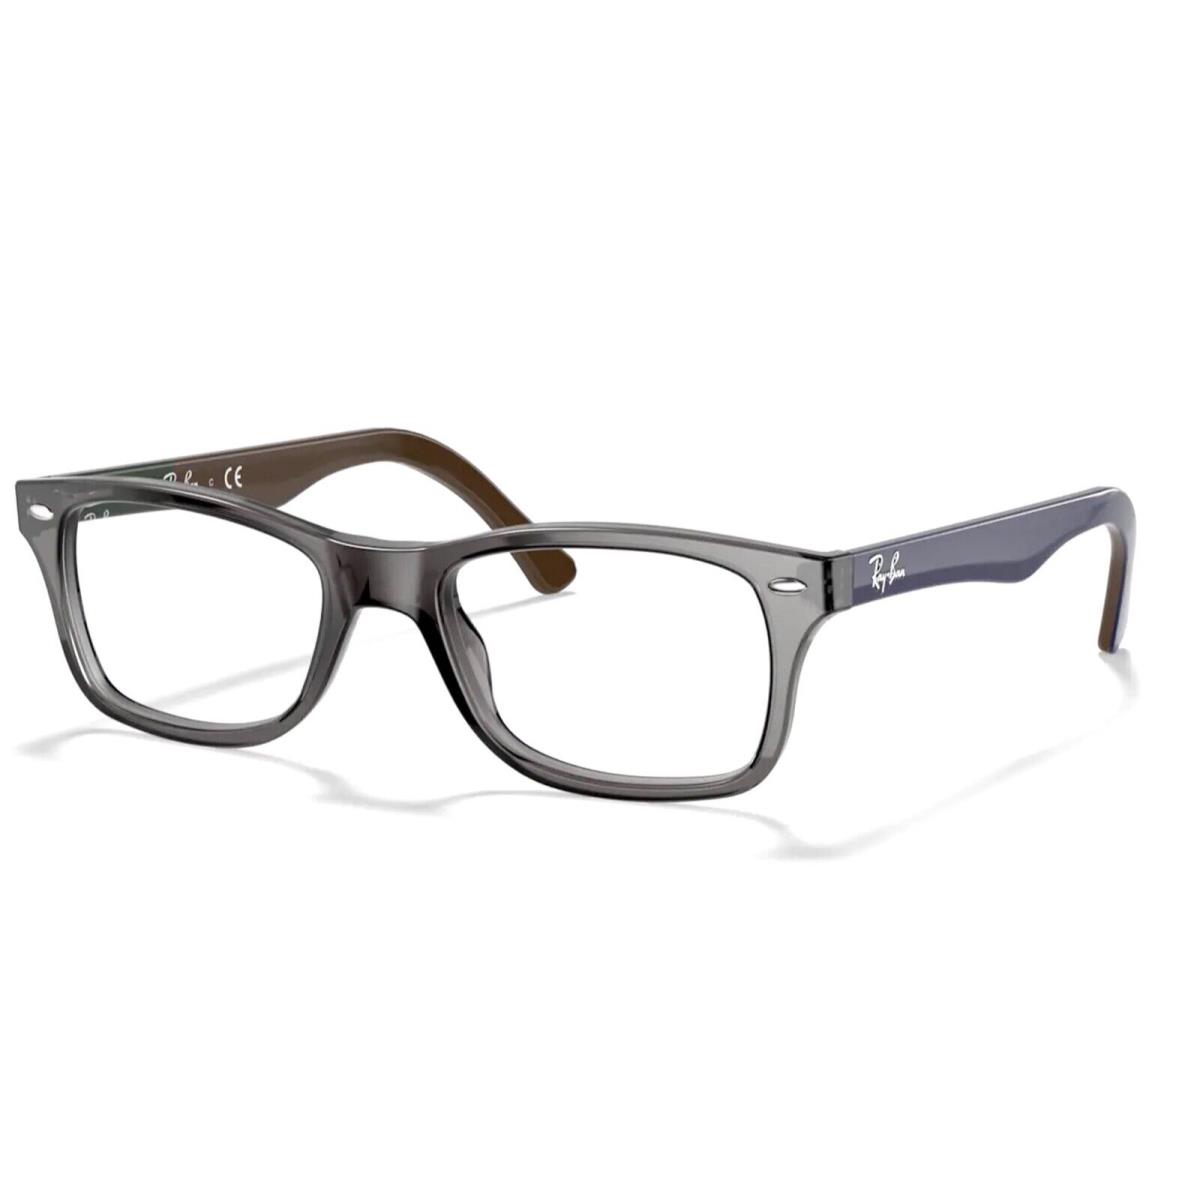 Unisex Ray-ban RX5228 5546 Rectangular Eyeglass Frames - Grey Blue 53mm - Grey Blue Frame